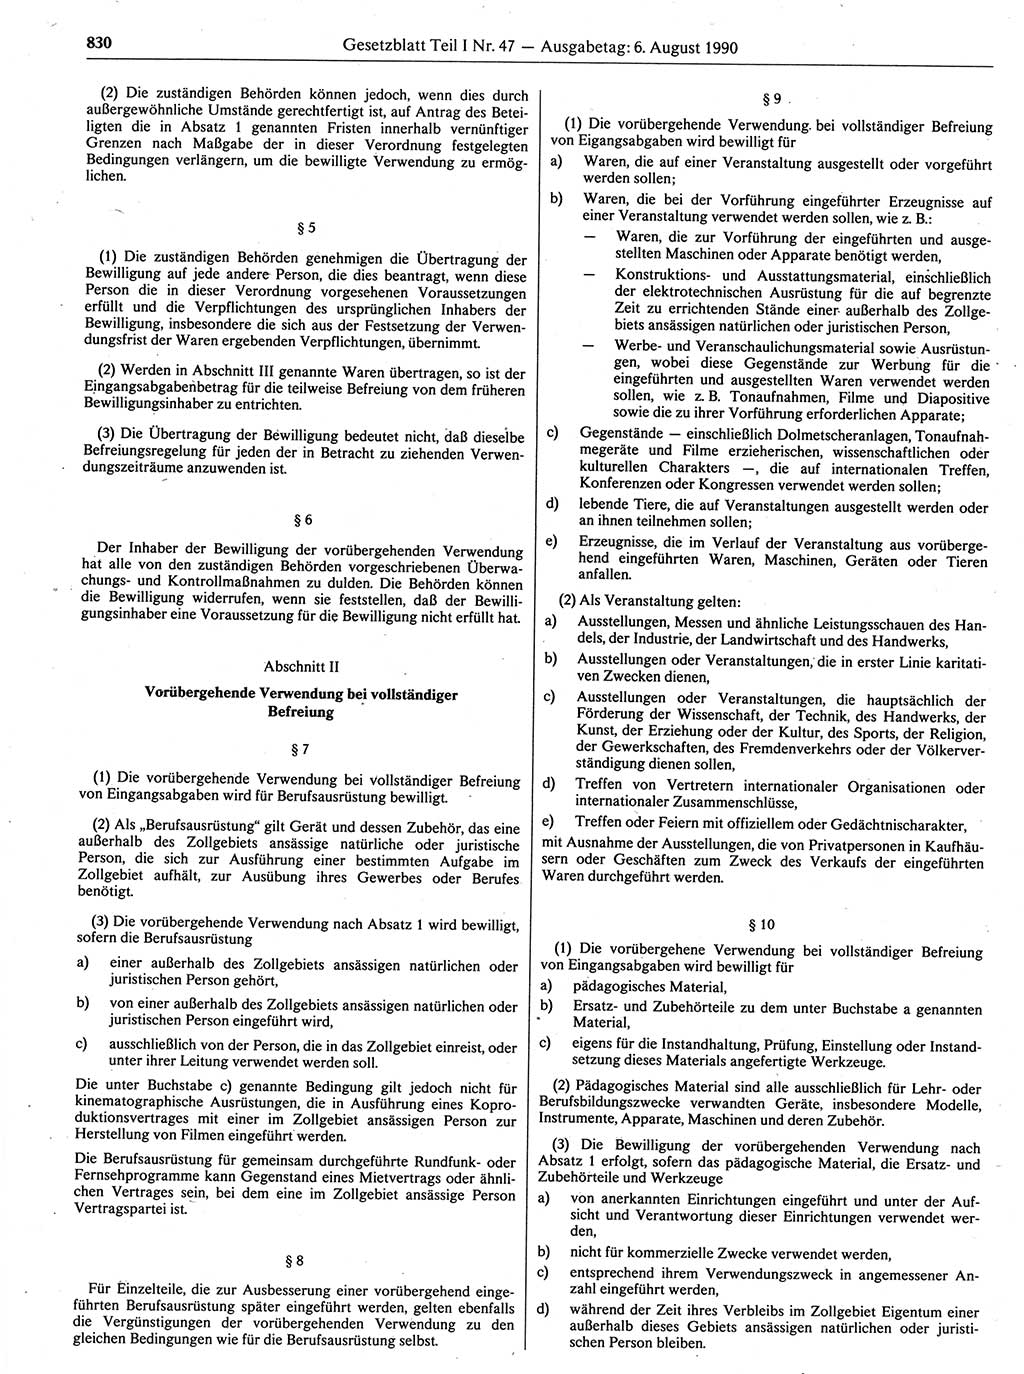 Gesetzblatt (GBl.) der Deutschen Demokratischen Republik (DDR) Teil Ⅰ 1990, Seite 830 (GBl. DDR Ⅰ 1990, S. 830)